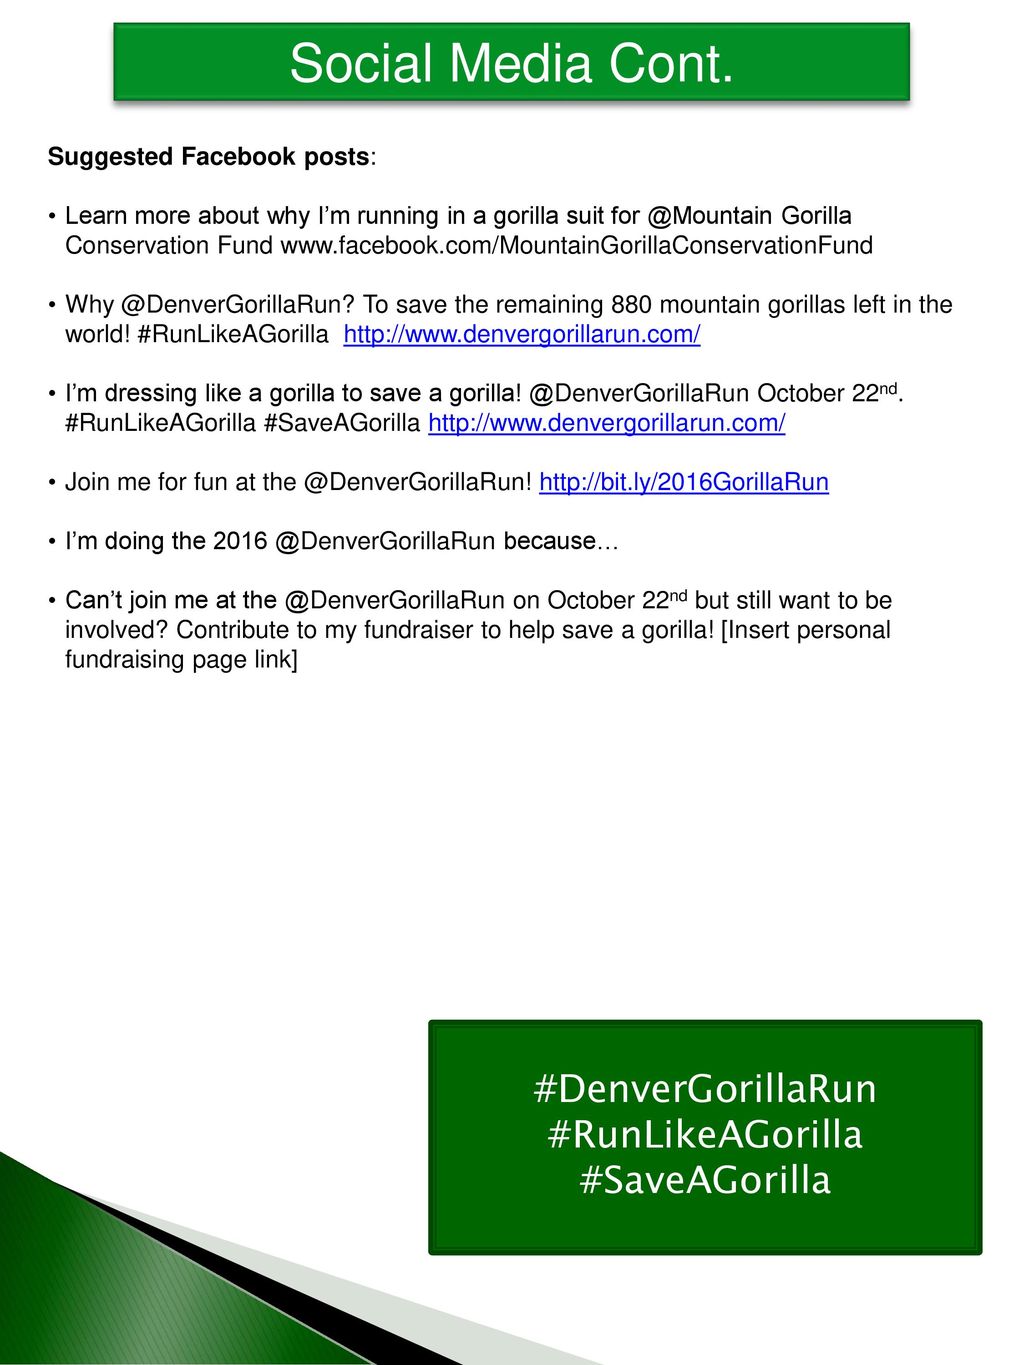 Social Media Cont. #DenverGorillaRun #RunLikeAGorilla #SaveAGorilla